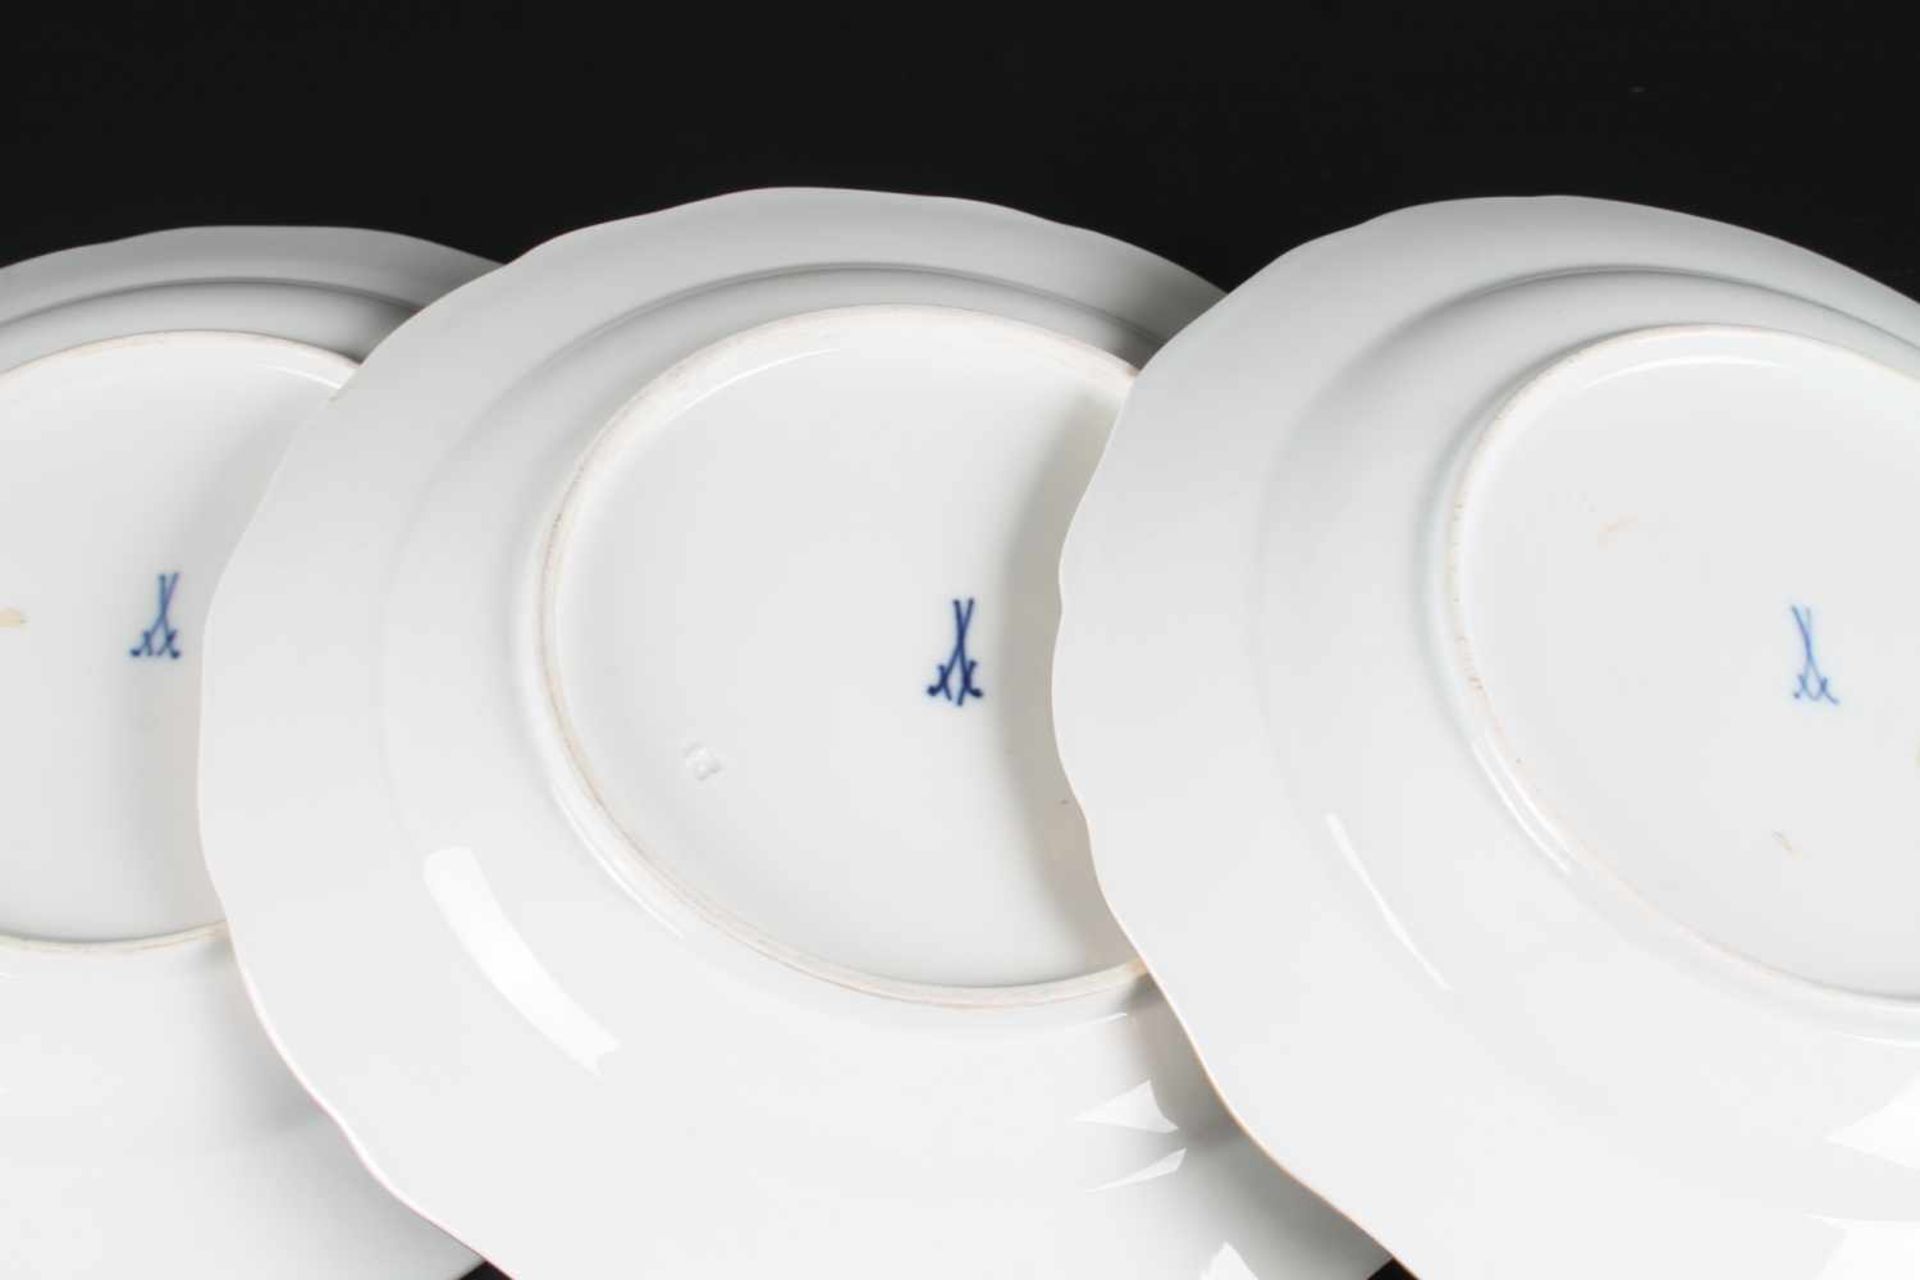 Meissen - 3 Speiseteller Hofdrache Reich, 3 dining plates, Porzellan, blaue Schwertermarke 1. - Image 5 of 5